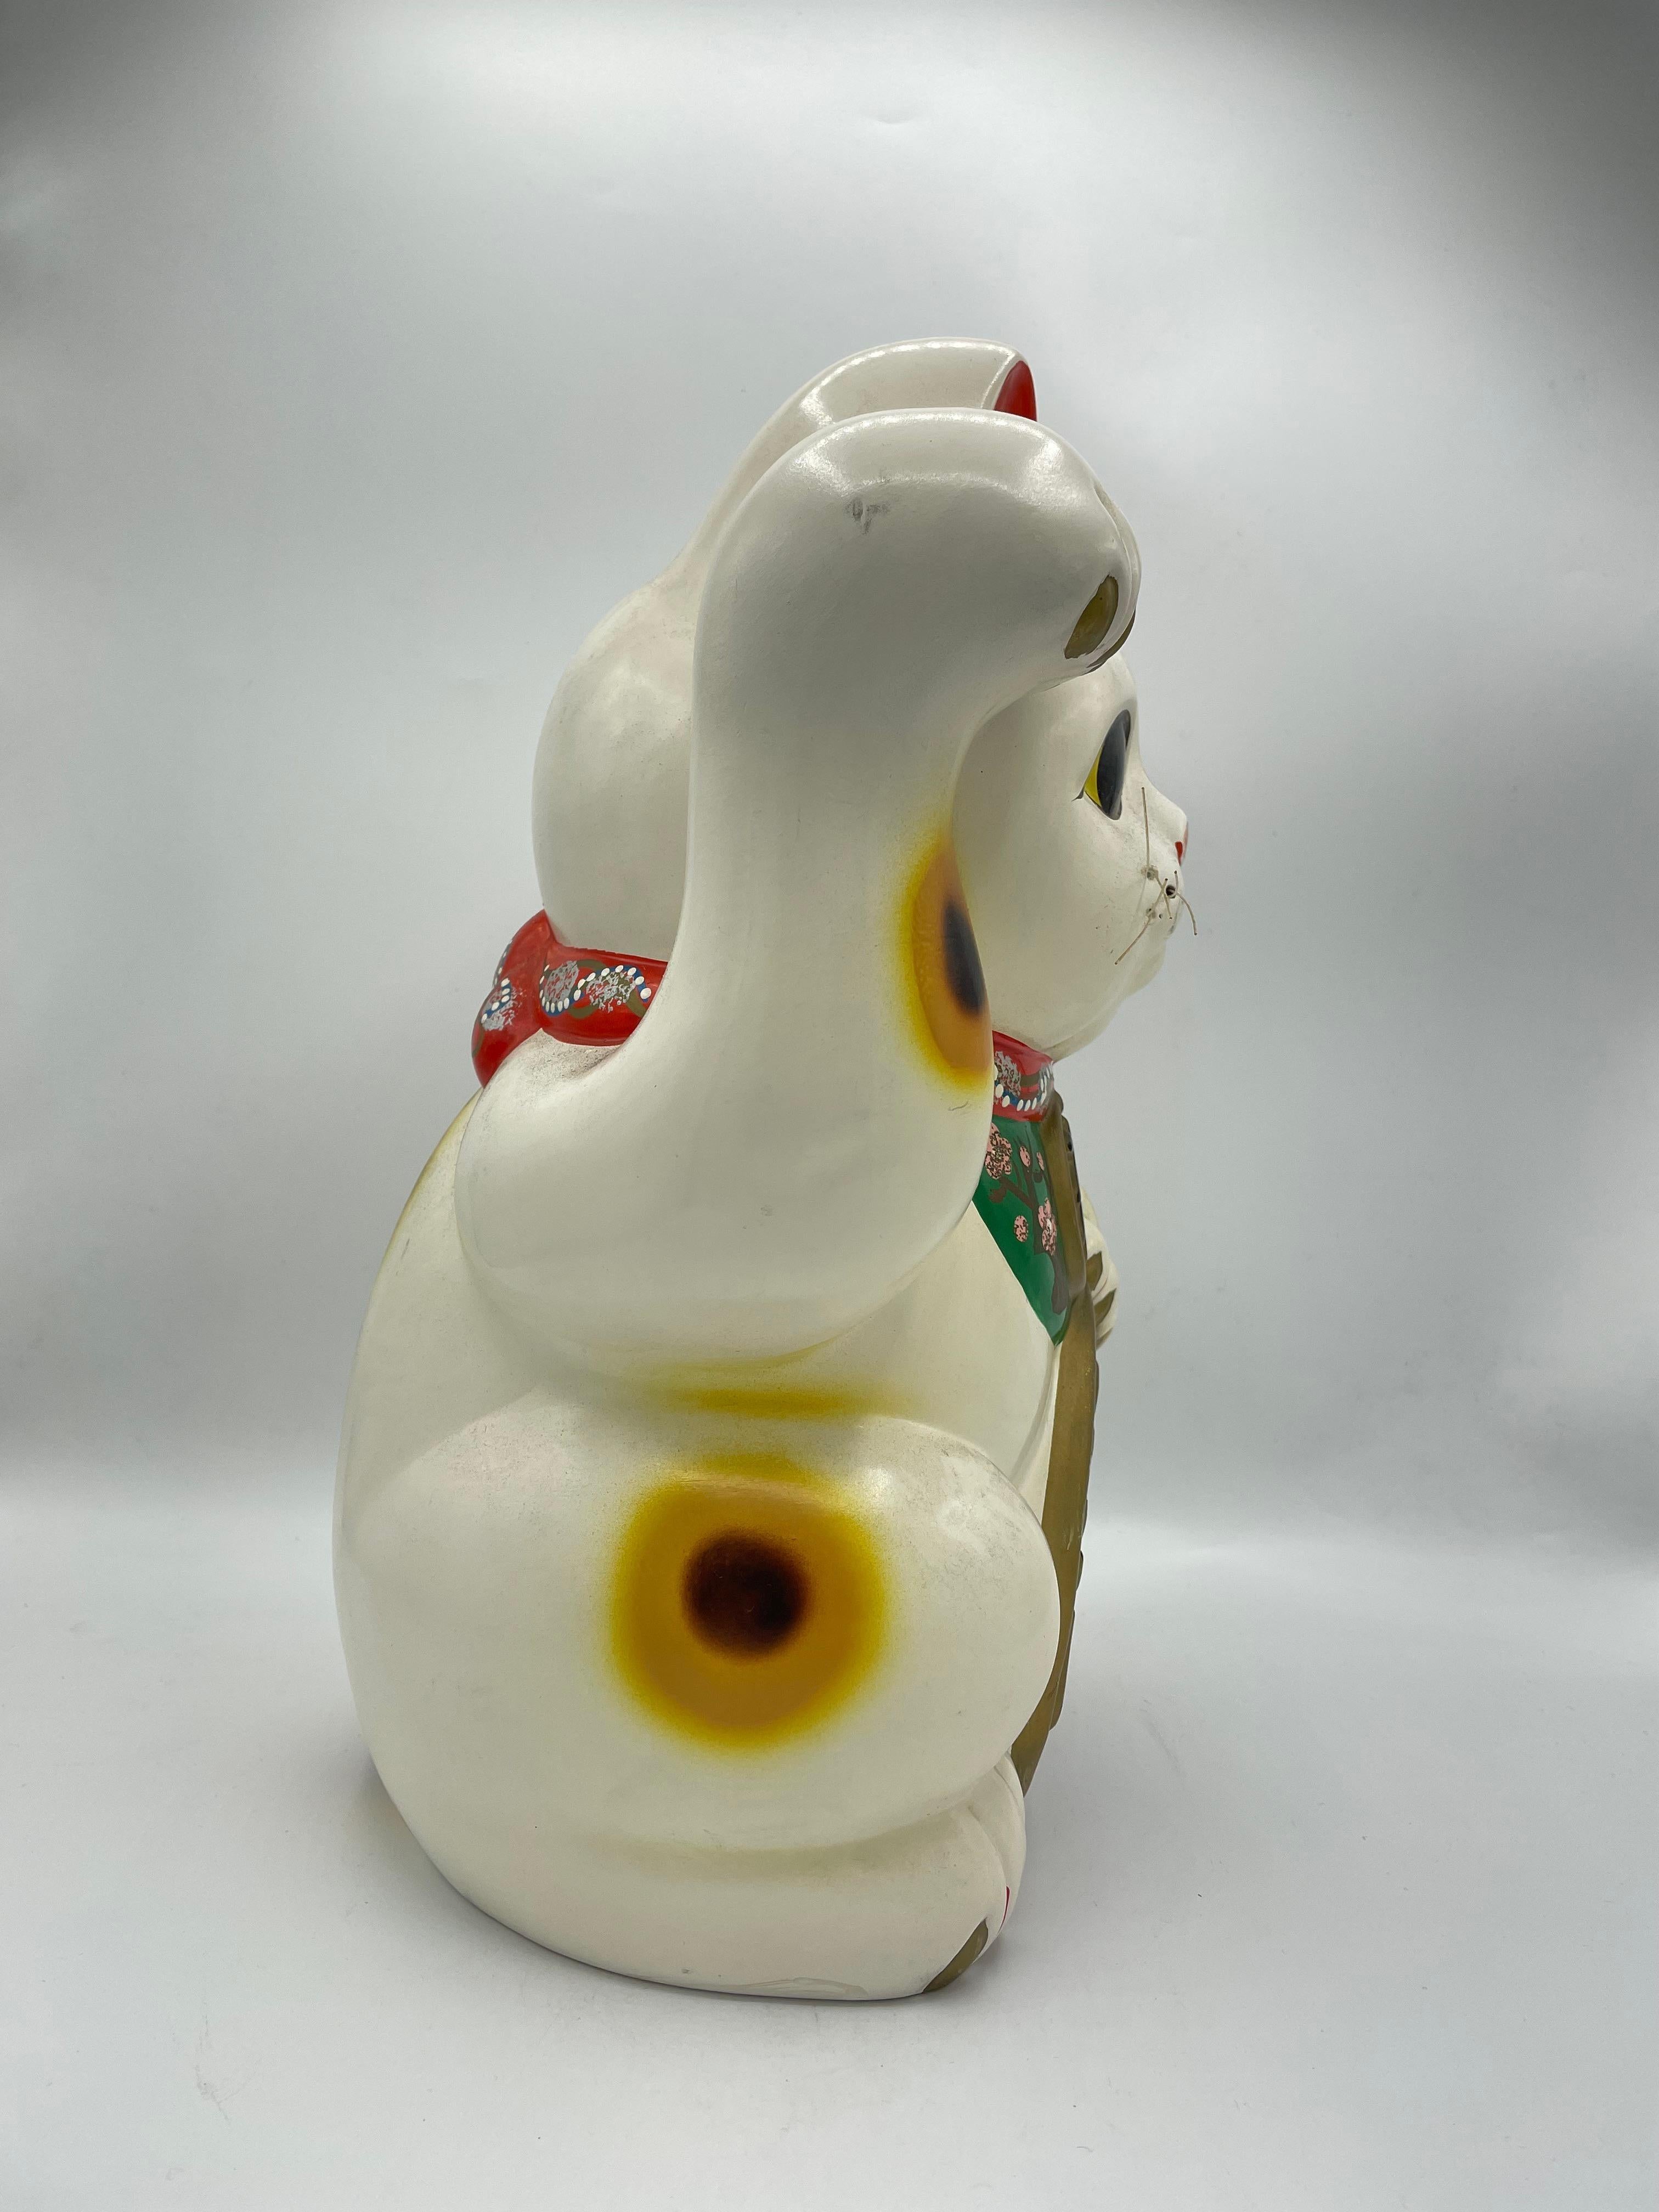 Dies ist ein Vintage-Sparschwein von manekineko Katze. Es ist mit Keramik gemacht und es wurde um 1960 in Showa-Ära gemacht.

Das Maneki-Neko ist eine japanische Figur, von der man glaubt, dass sie dem Besitzer Glück bringt. Heutzutage werden sie